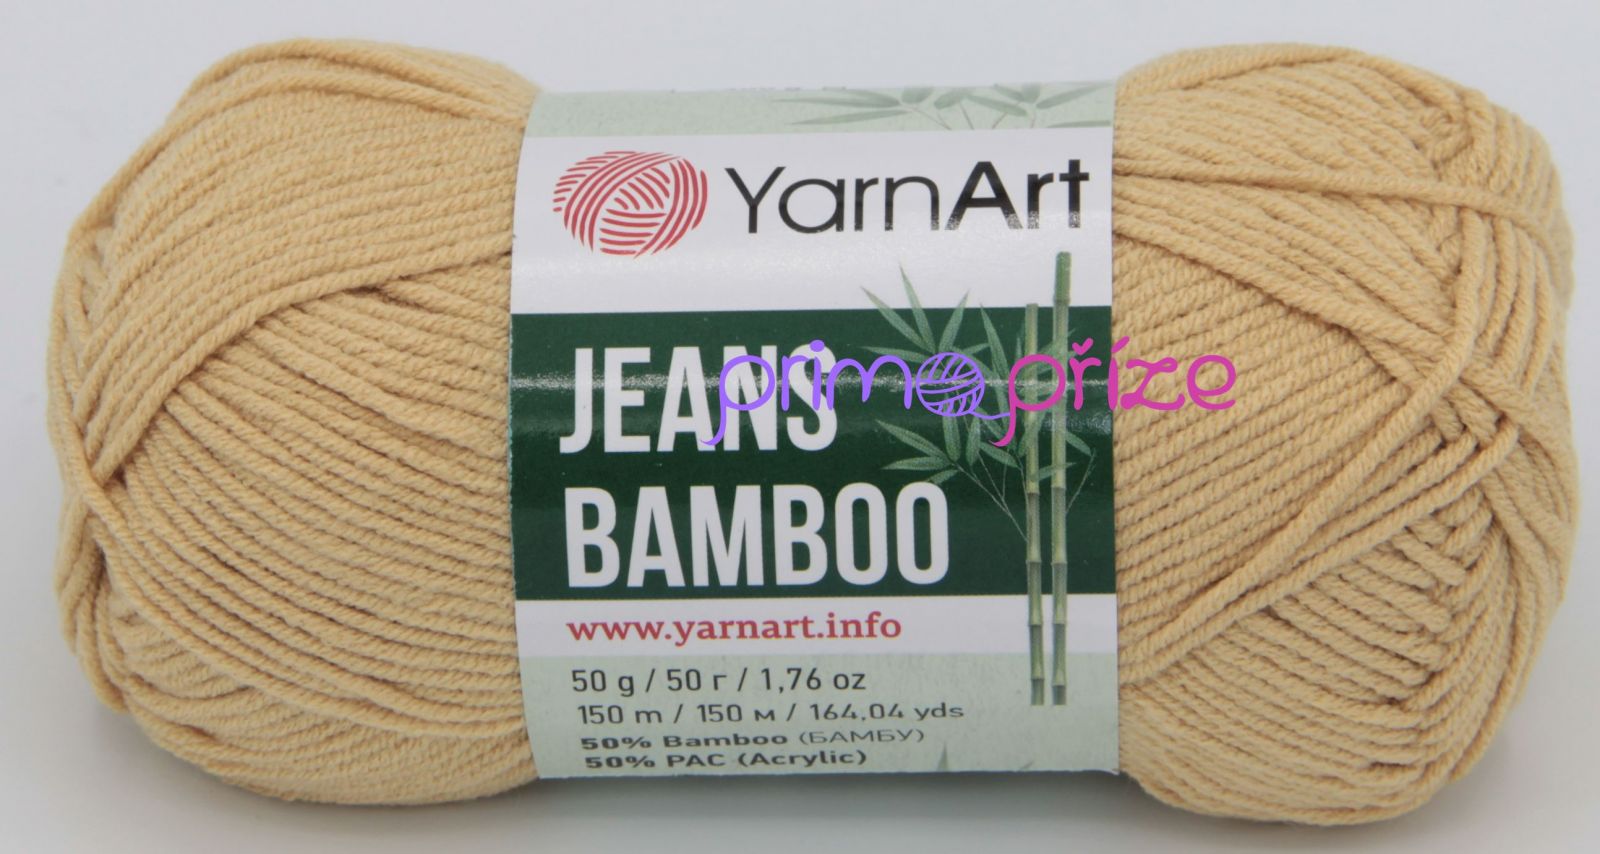 Yarn Art Jeans Bamboo